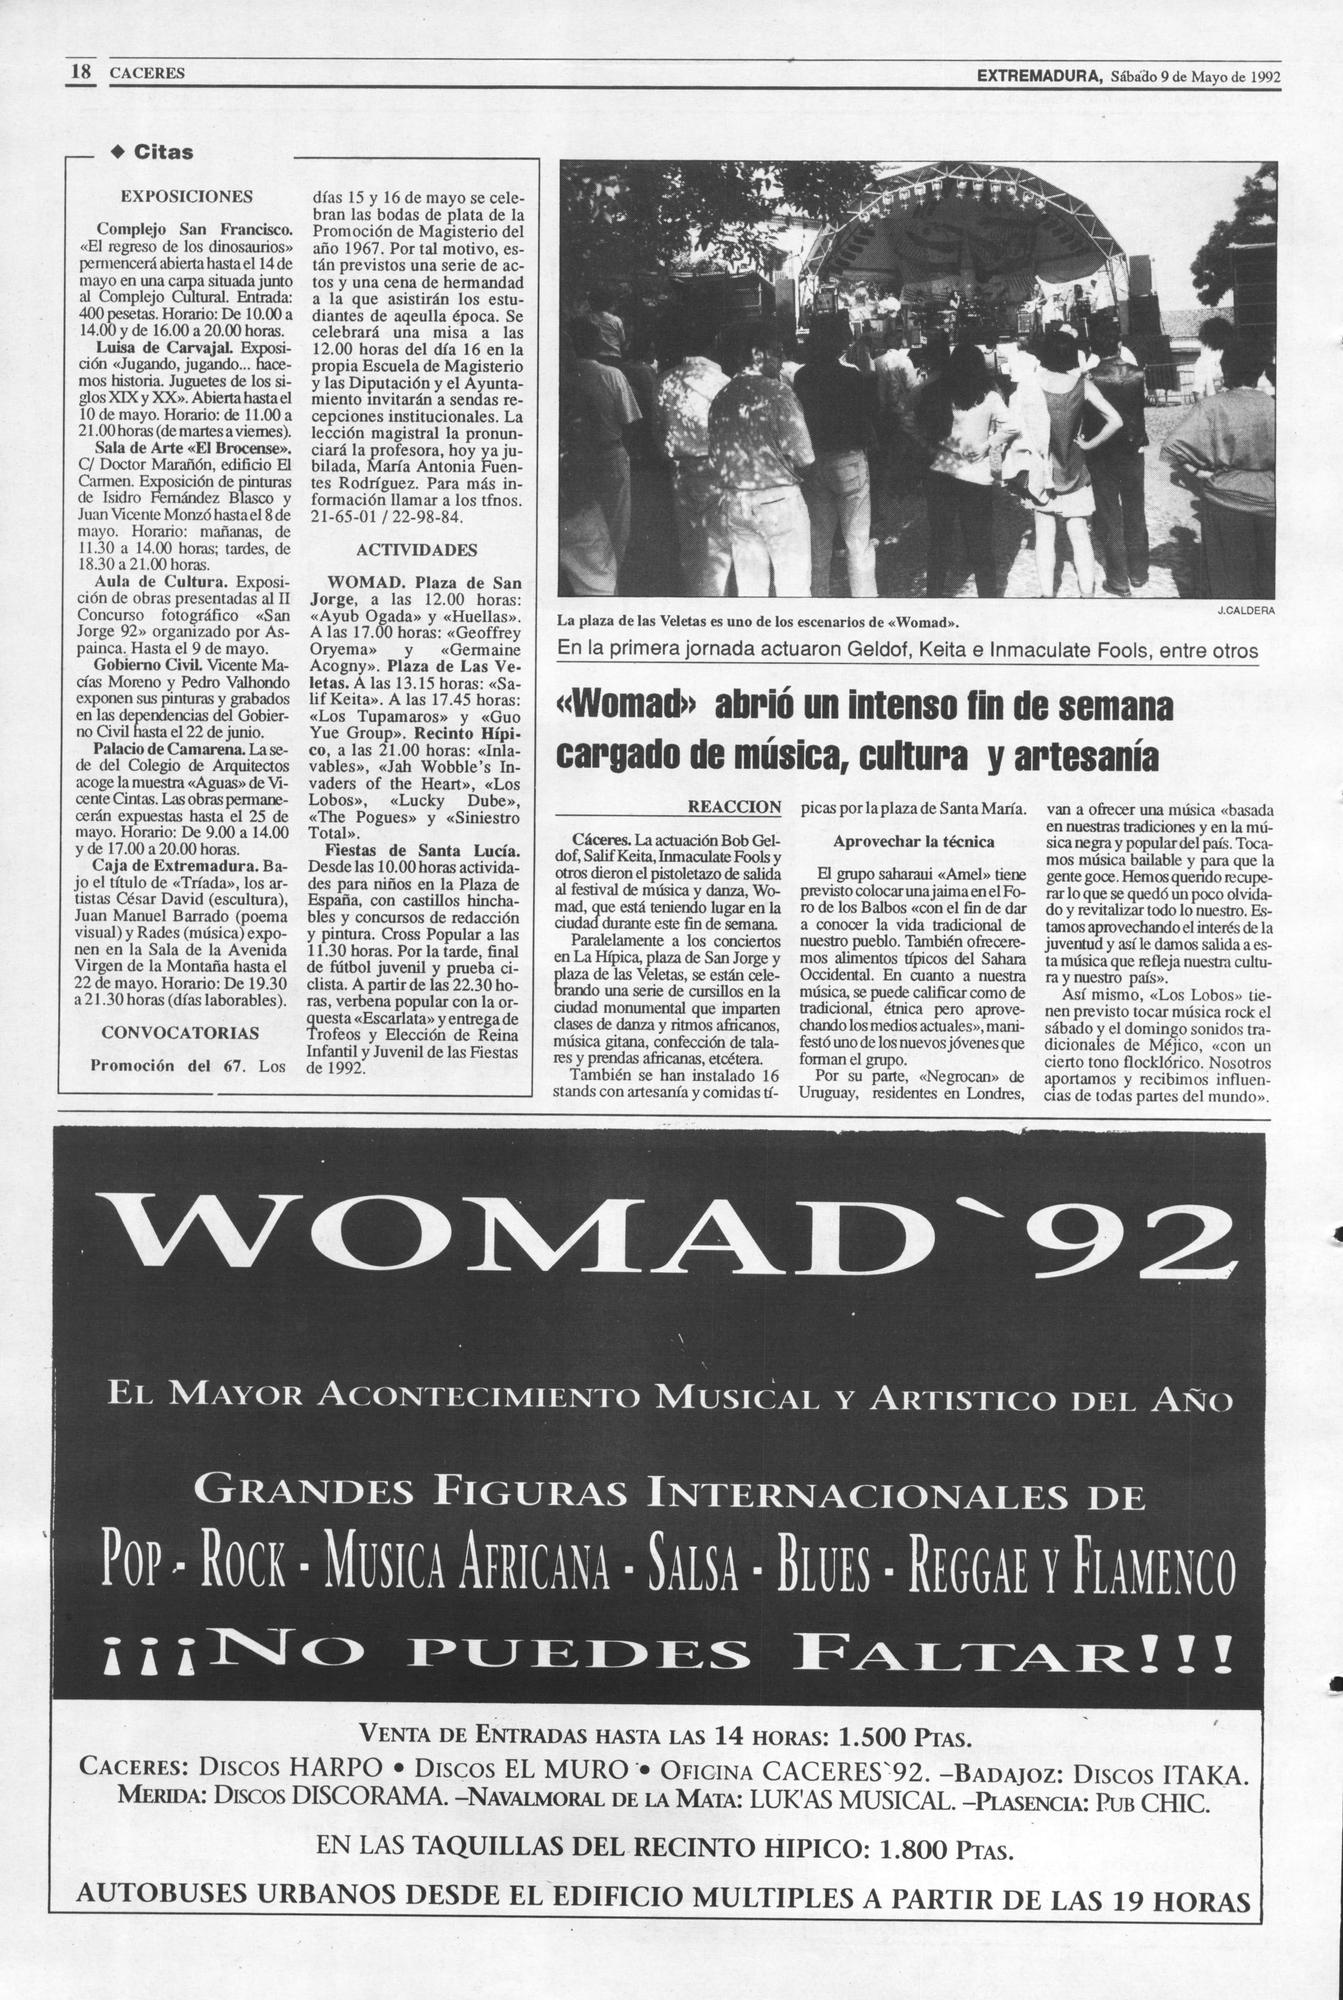 Página de El Periódico Extremadura el 9 de mayo de 1992.